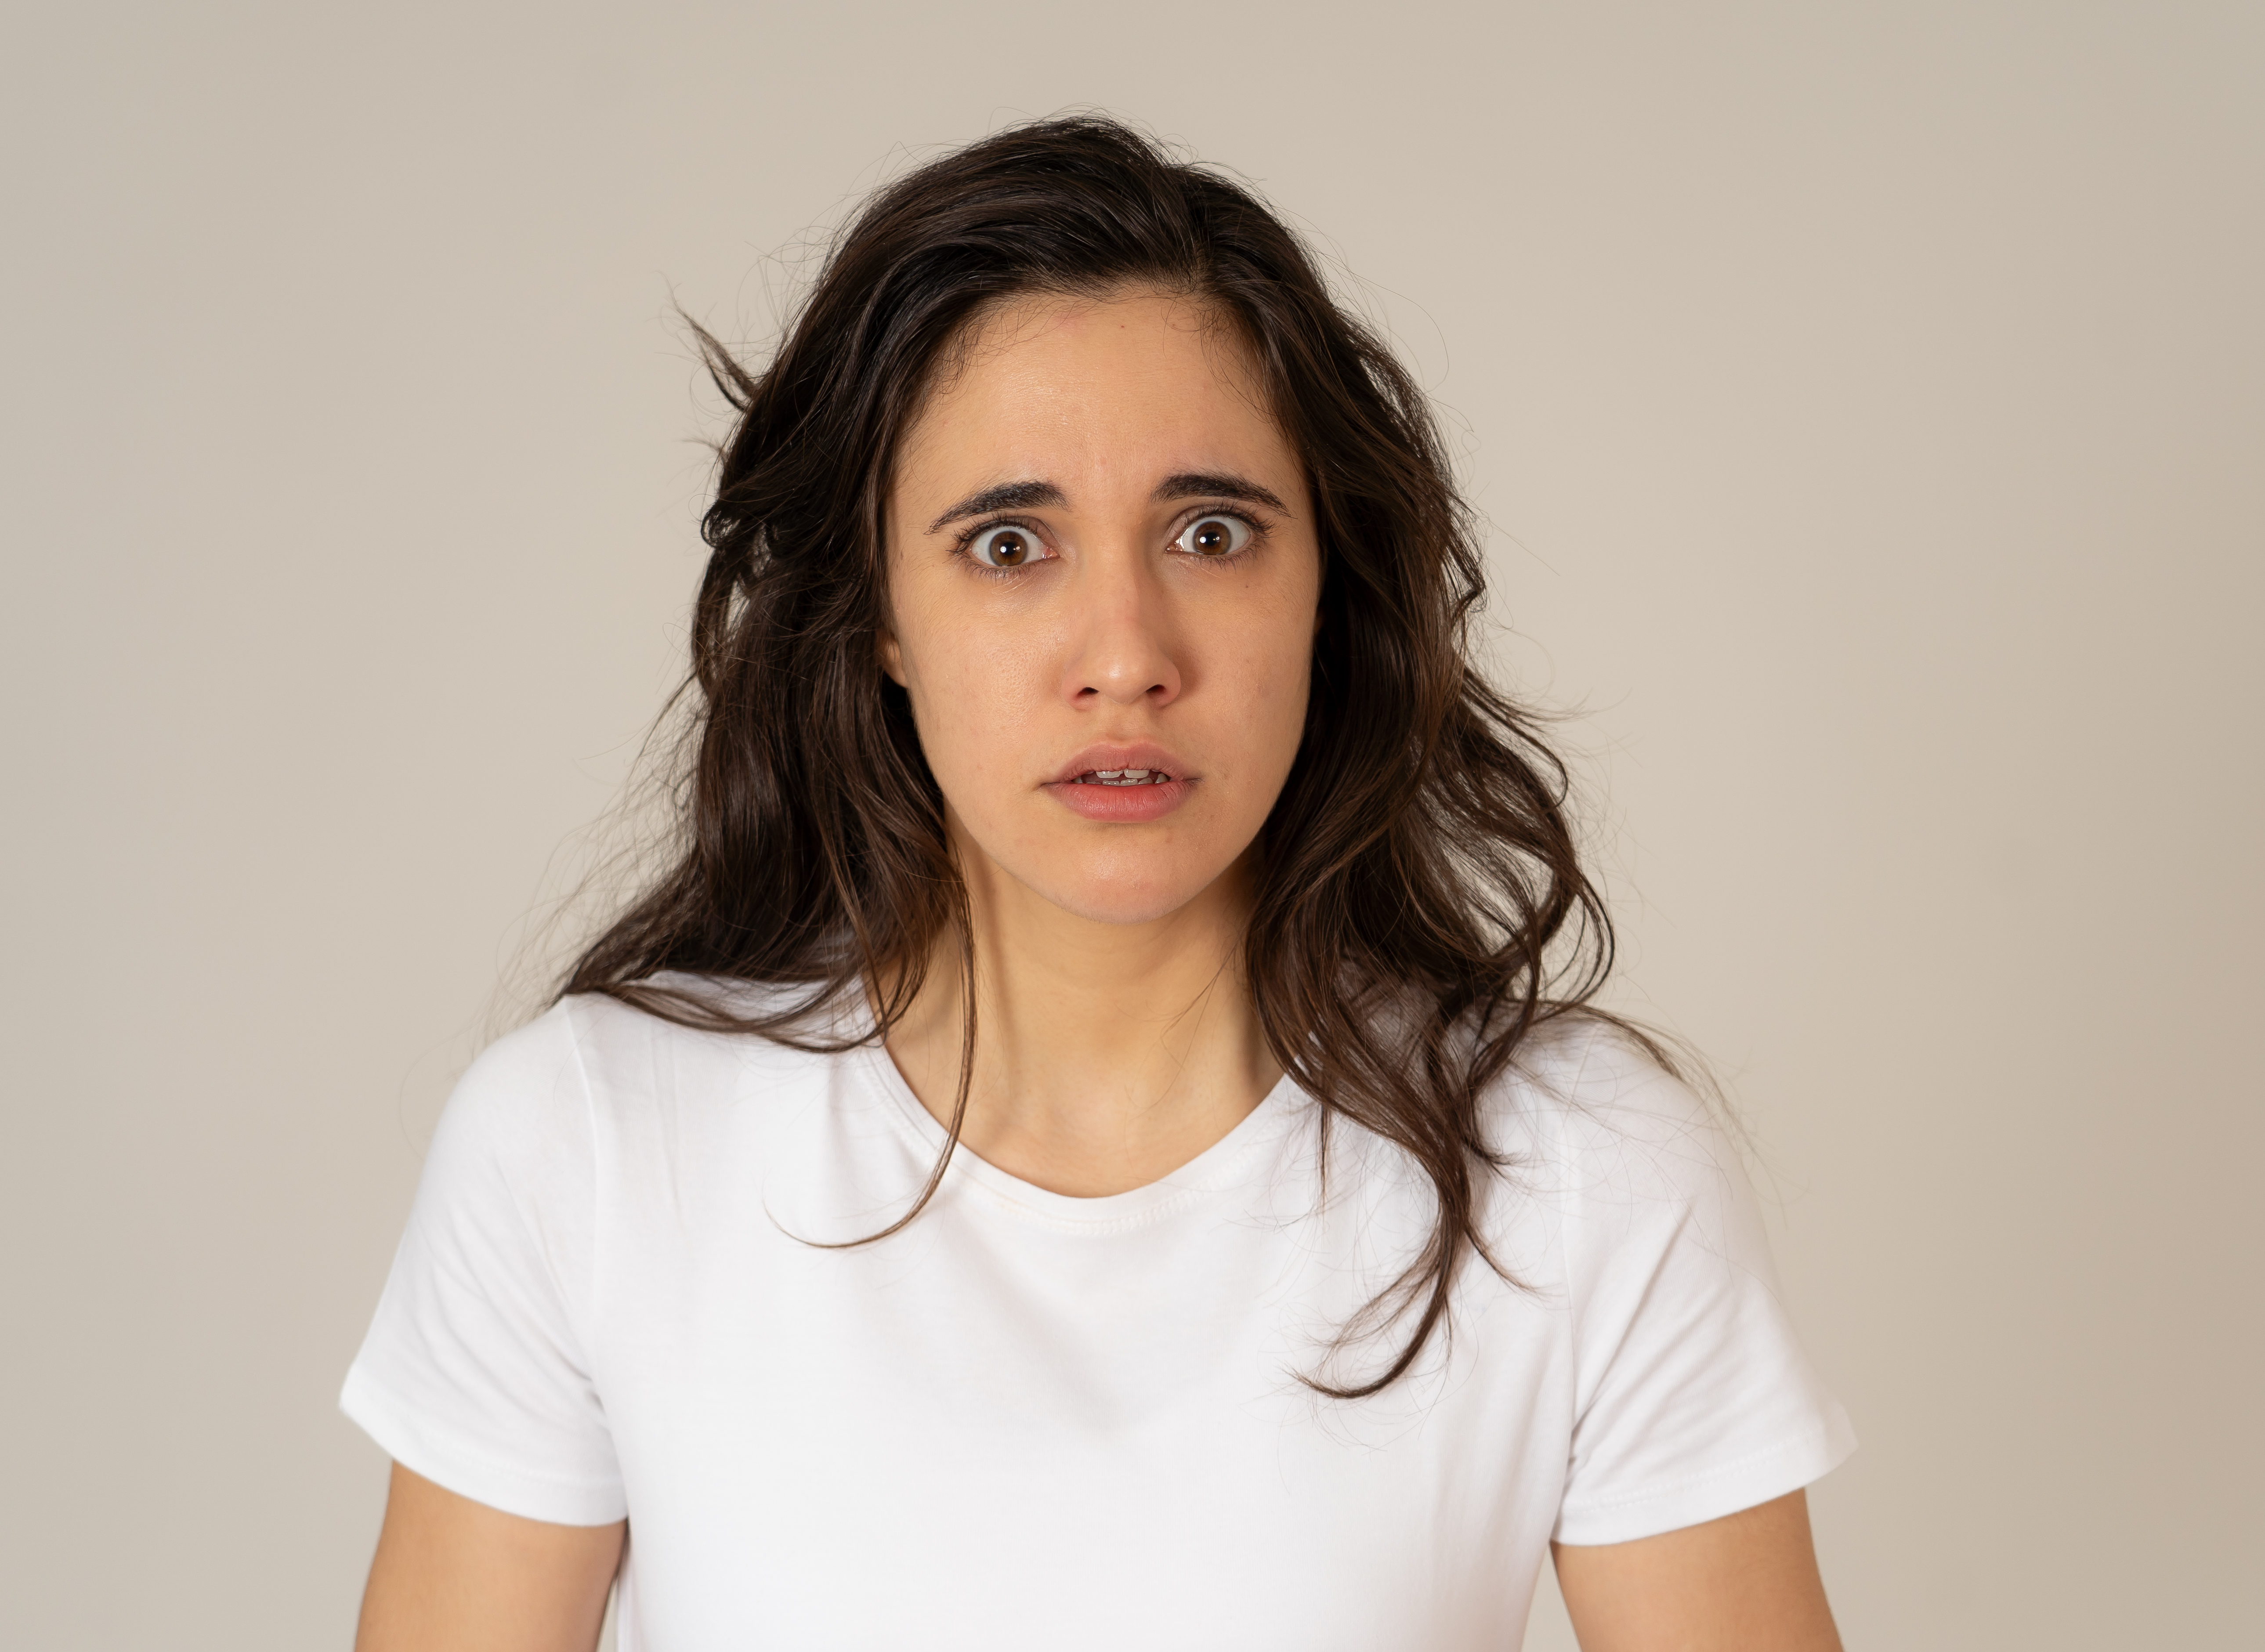 Mujer con expresión de conmoción y confusión | Fuente: Shutterstock